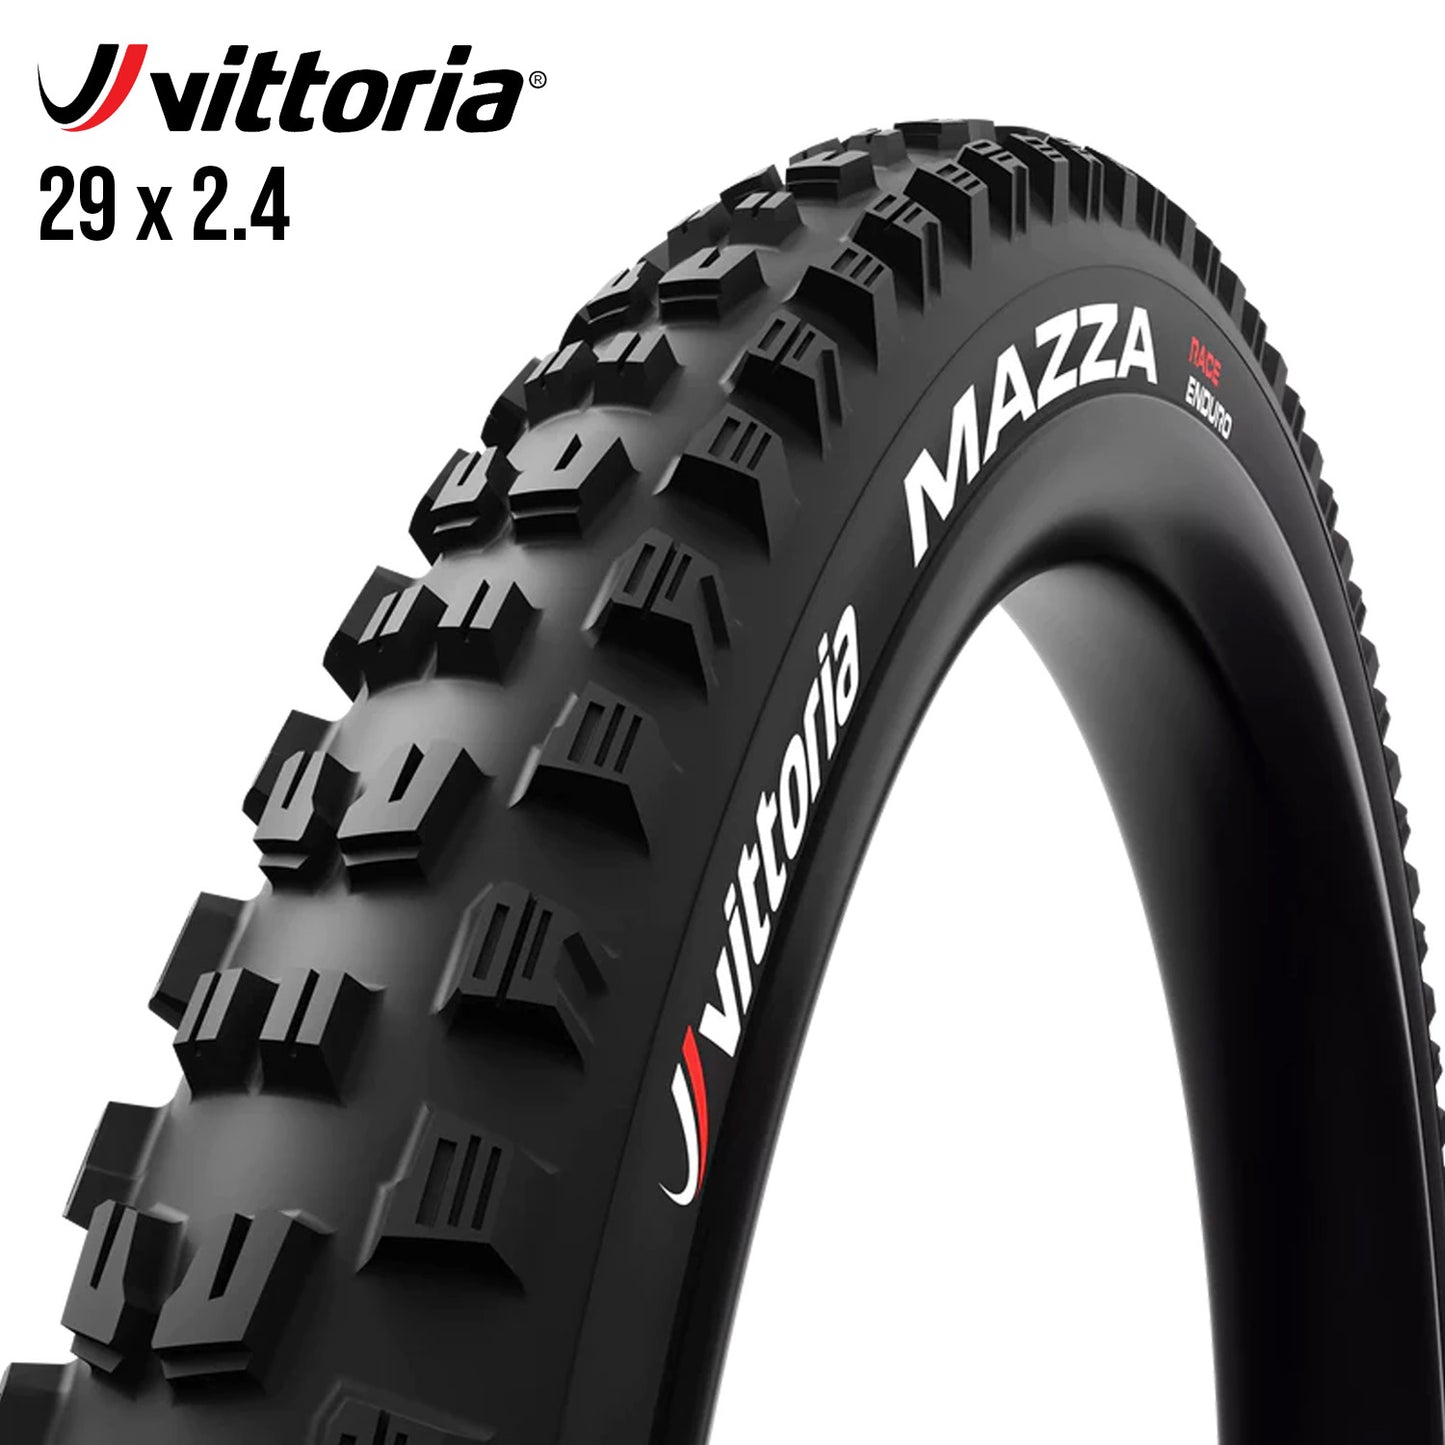 Vittoria Mazza Enduro Race Tubeless MTB Tire 29er - Black